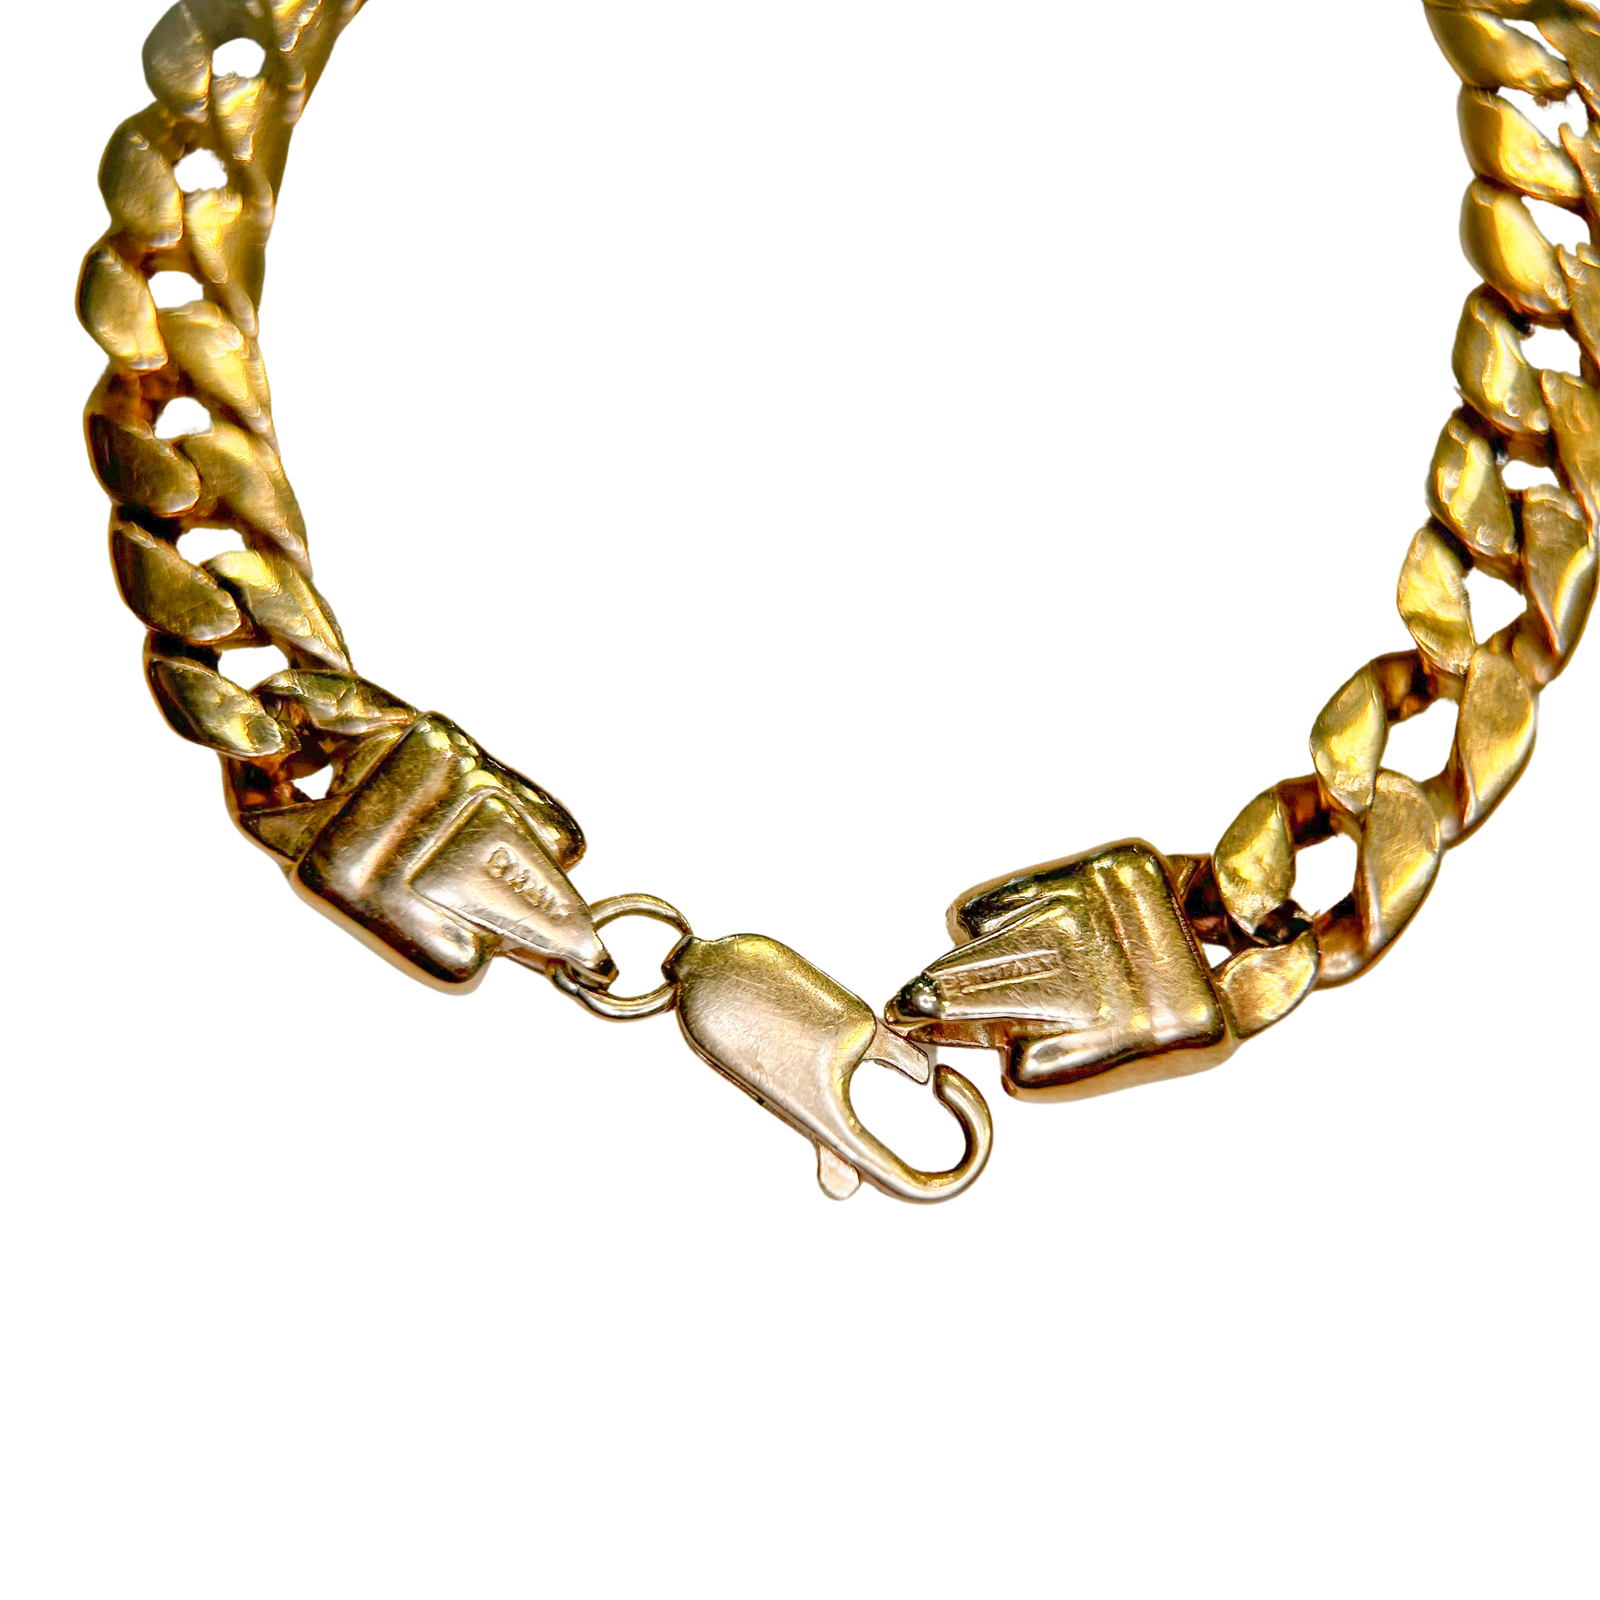 Unisex 14K Gold Cuban-Link Chain Bracelet